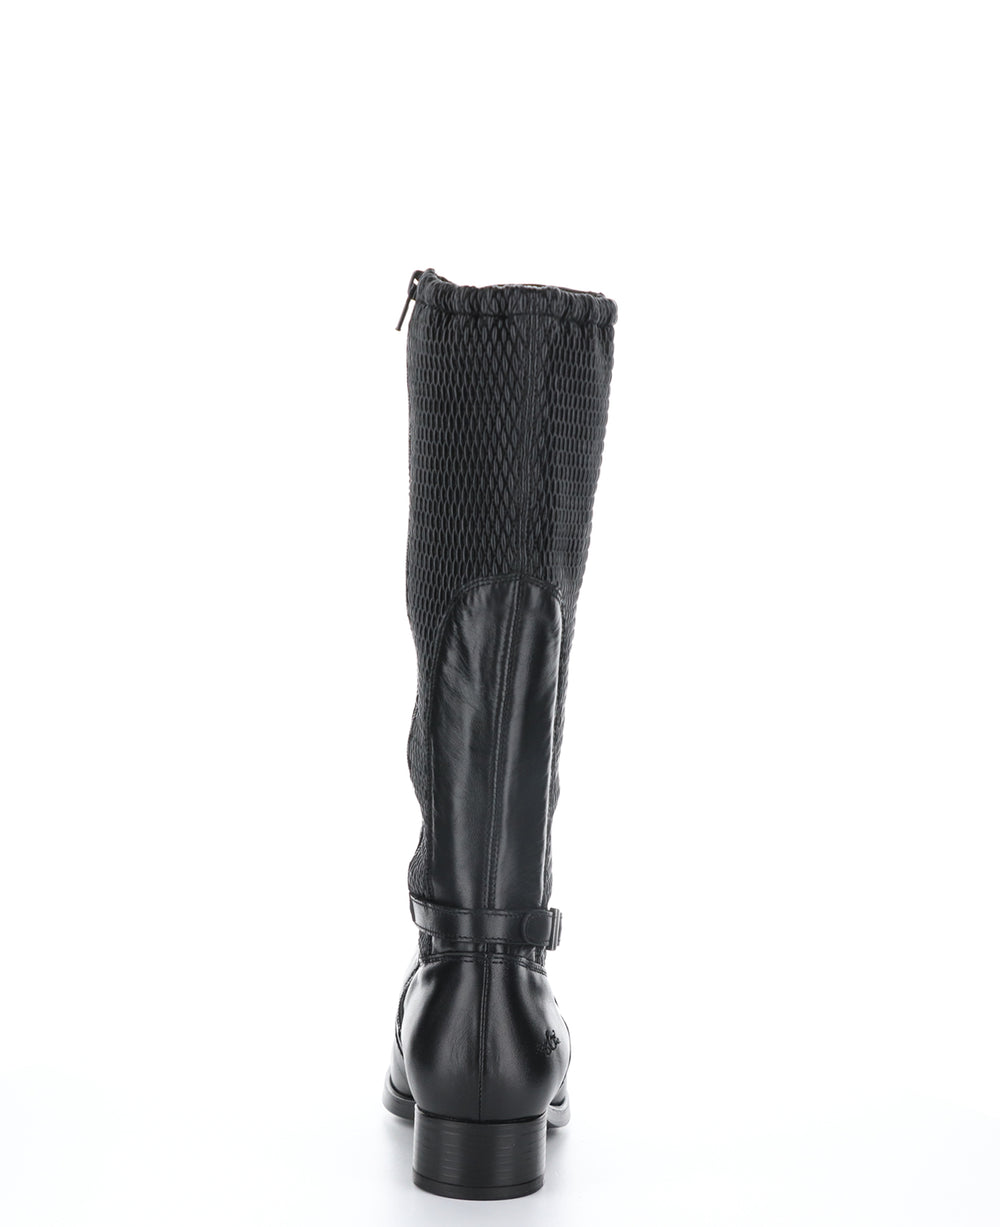 BAWN Black Zip Up Boots|BAWN Bottes avec Fermeture Zippée in Noir